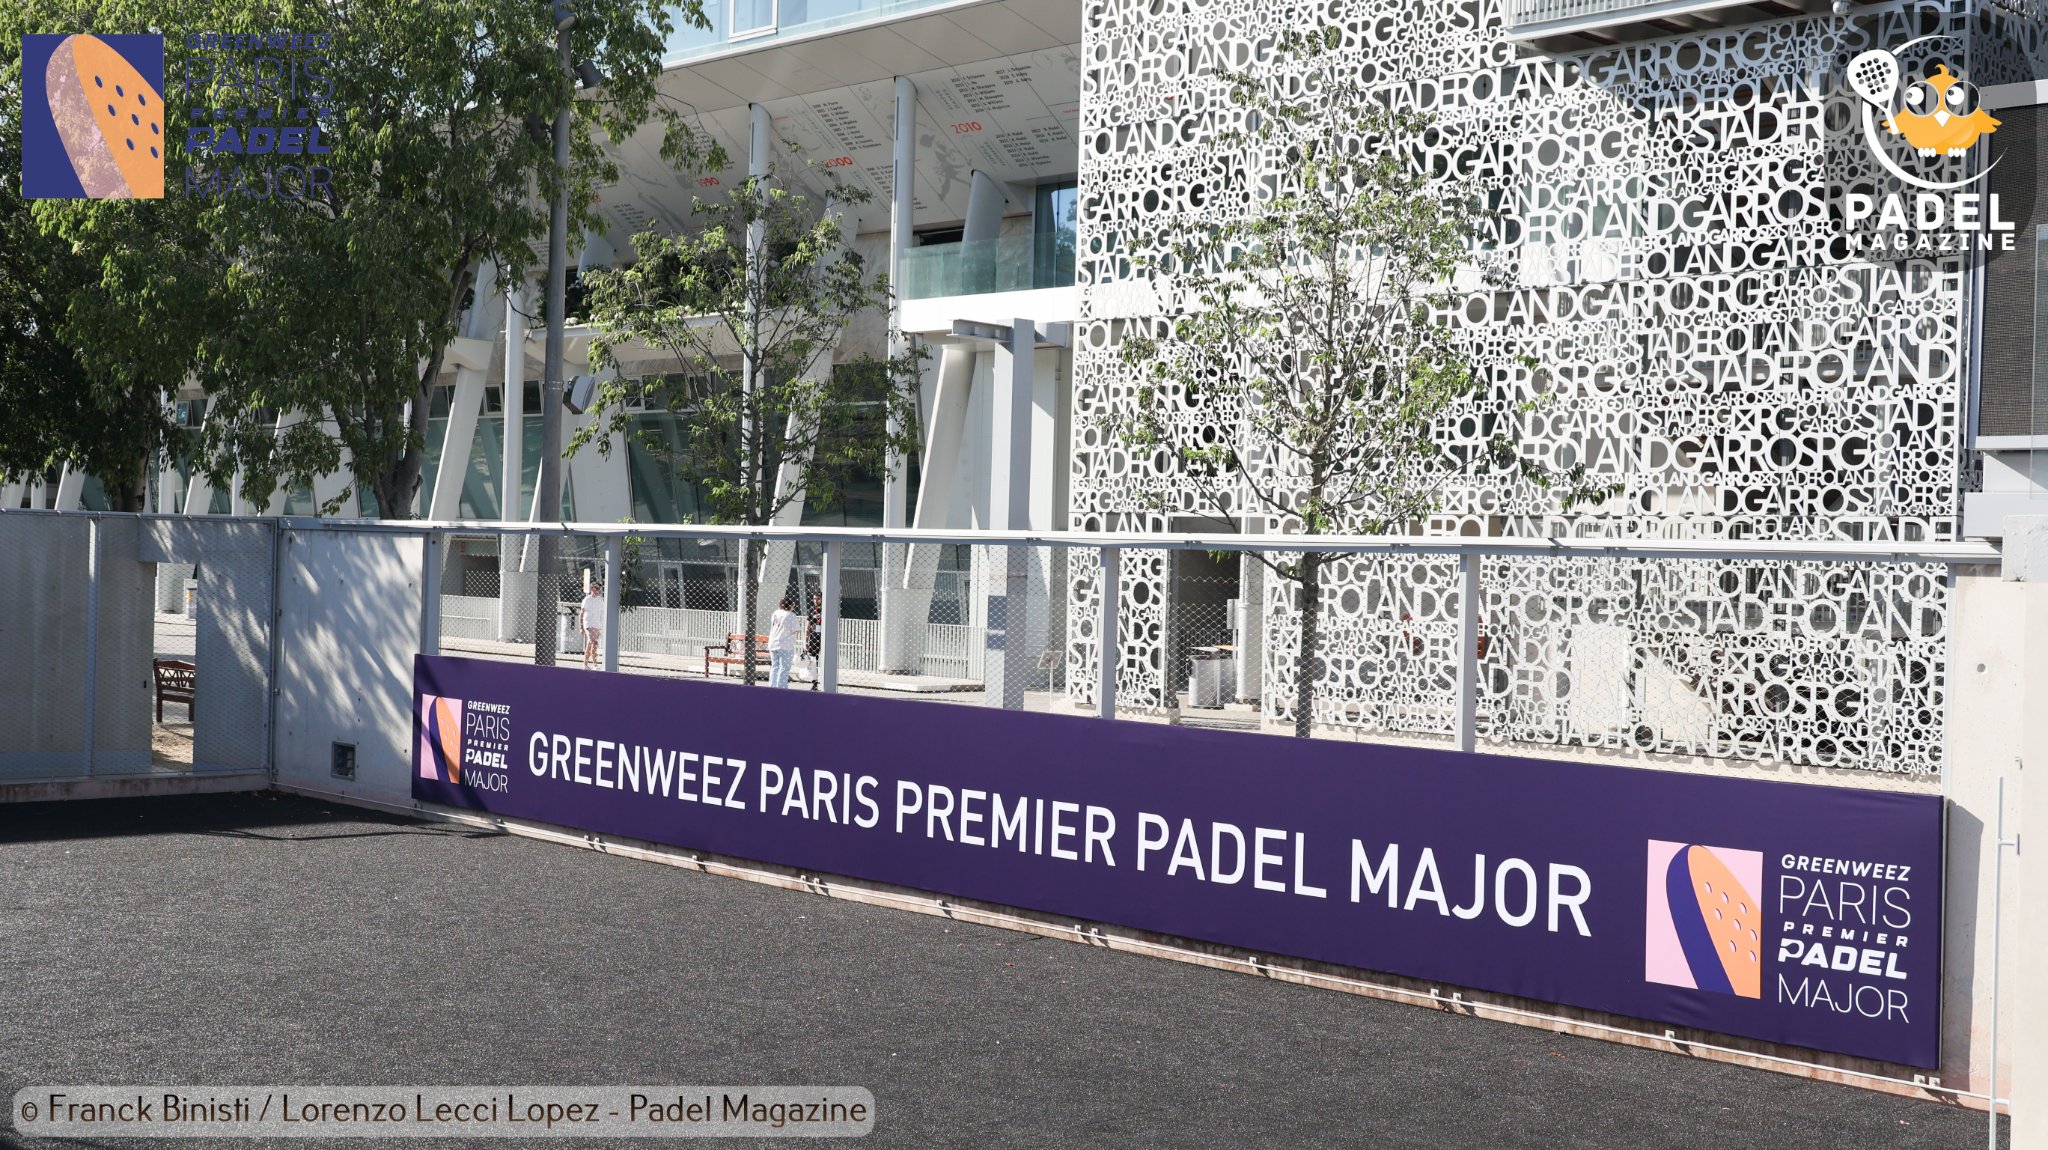 Greenweez Paris Premier Padel Major : 季度业绩